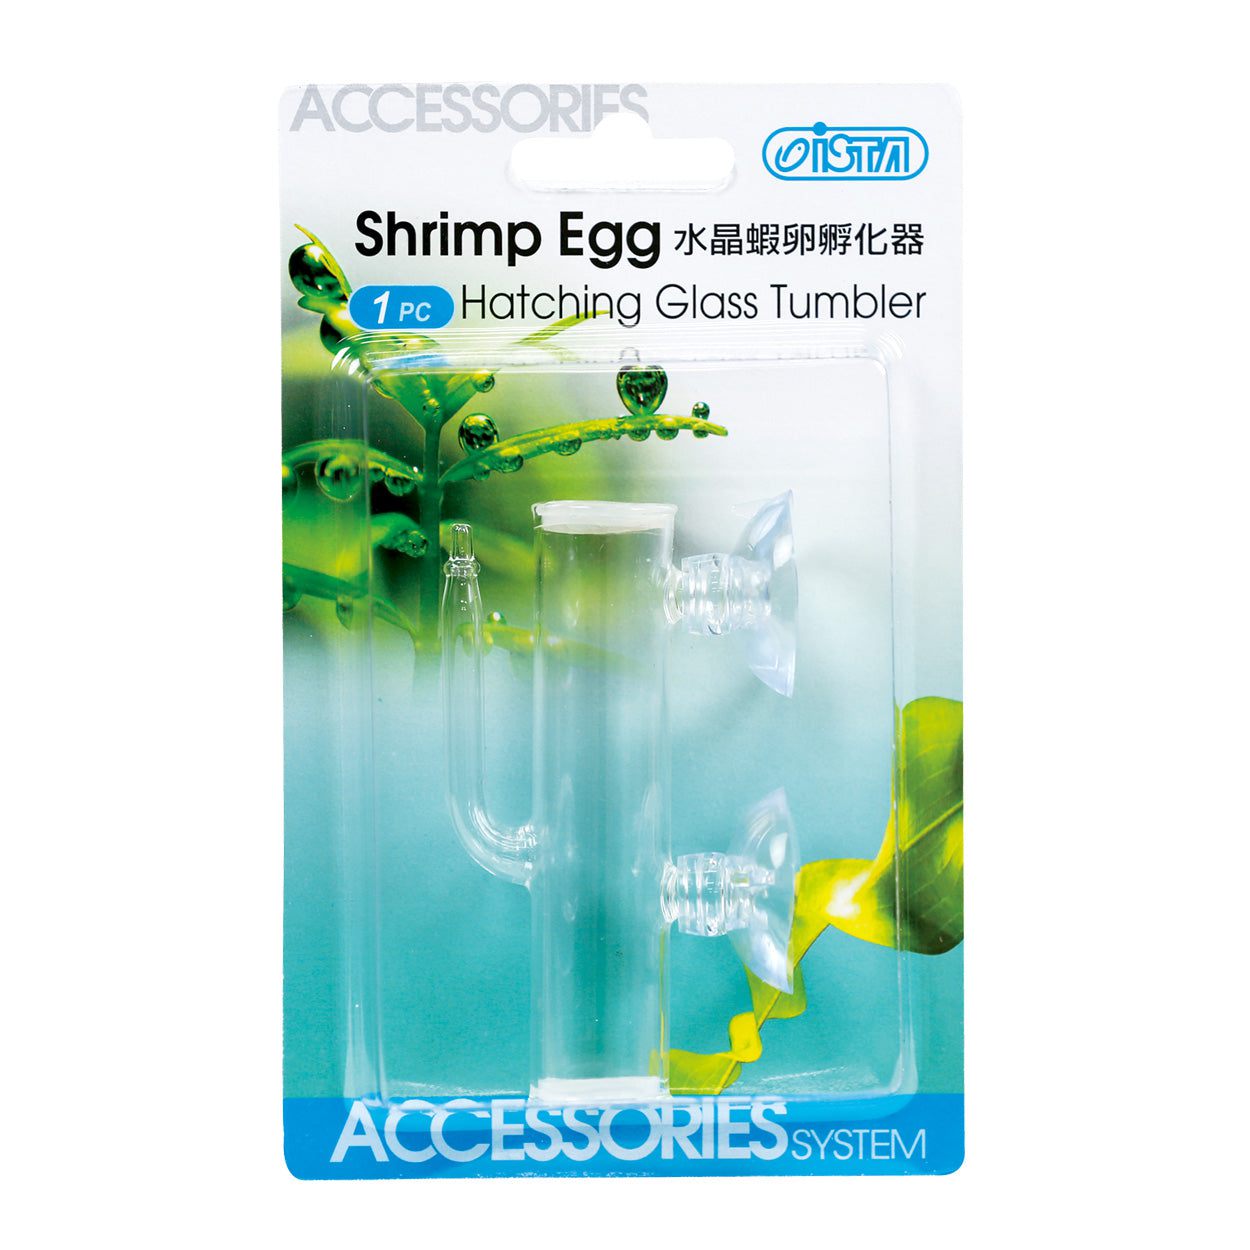 Ista | Shimp Egg Hatching Glass Tumbler 4719859037285 Super Cichlids